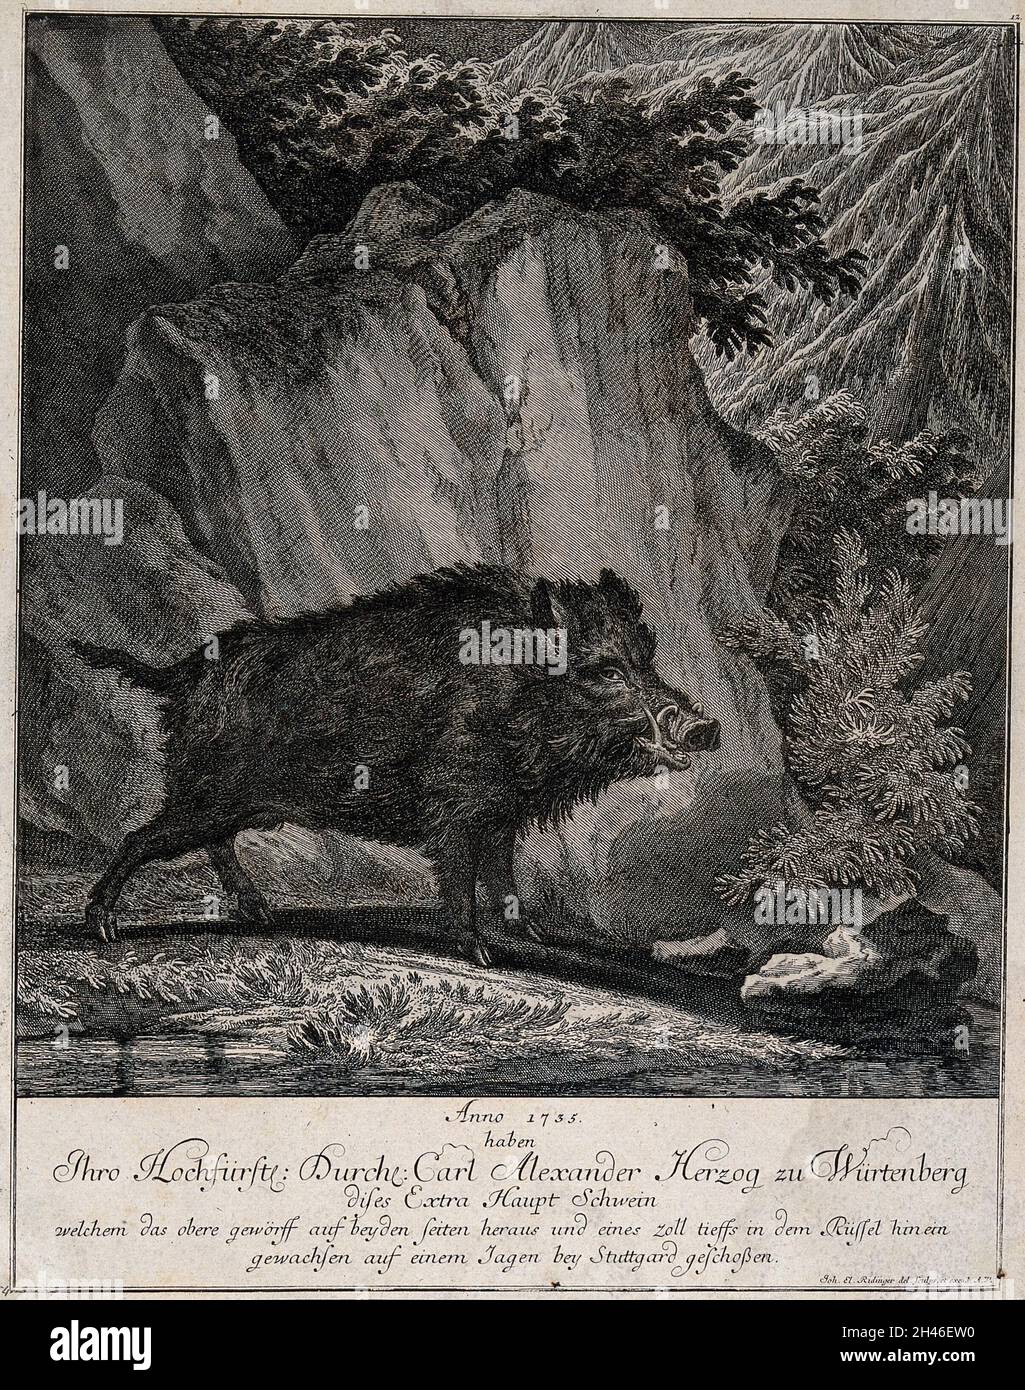 Un sanglier debout dans une forêt défrichement devant un rocher.Gravure par J. E. Ridinger. Banque D'Images